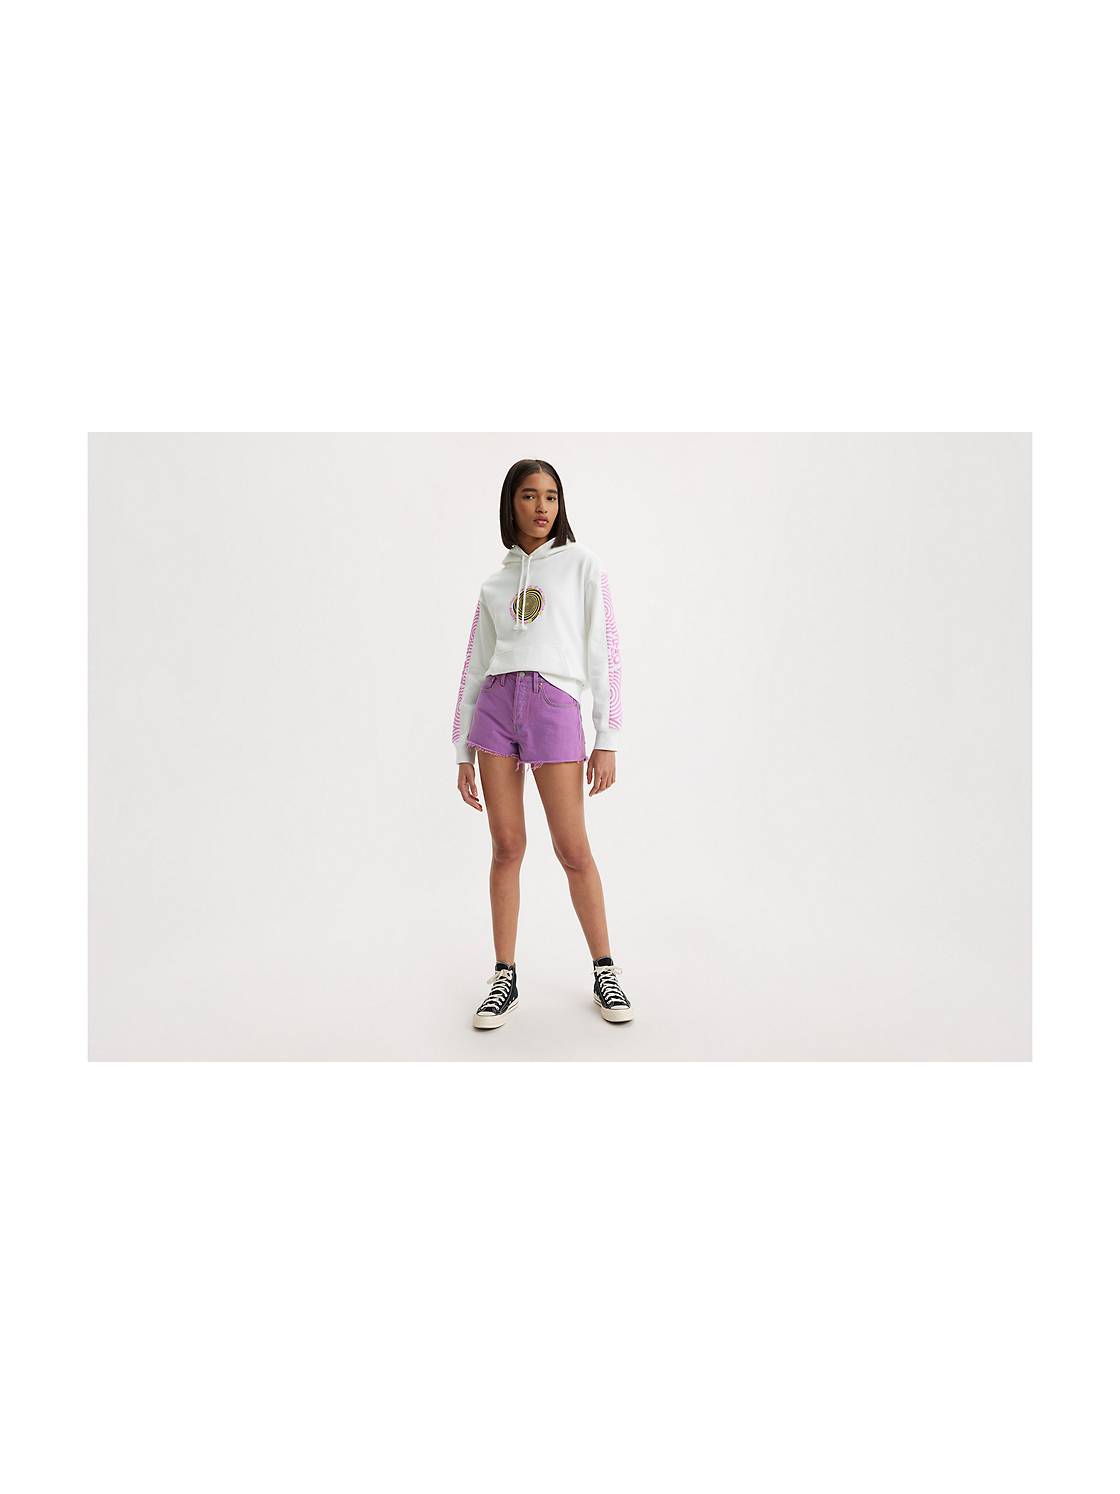 Women's 501 Shorts: Shop Women's Jean Short Styles